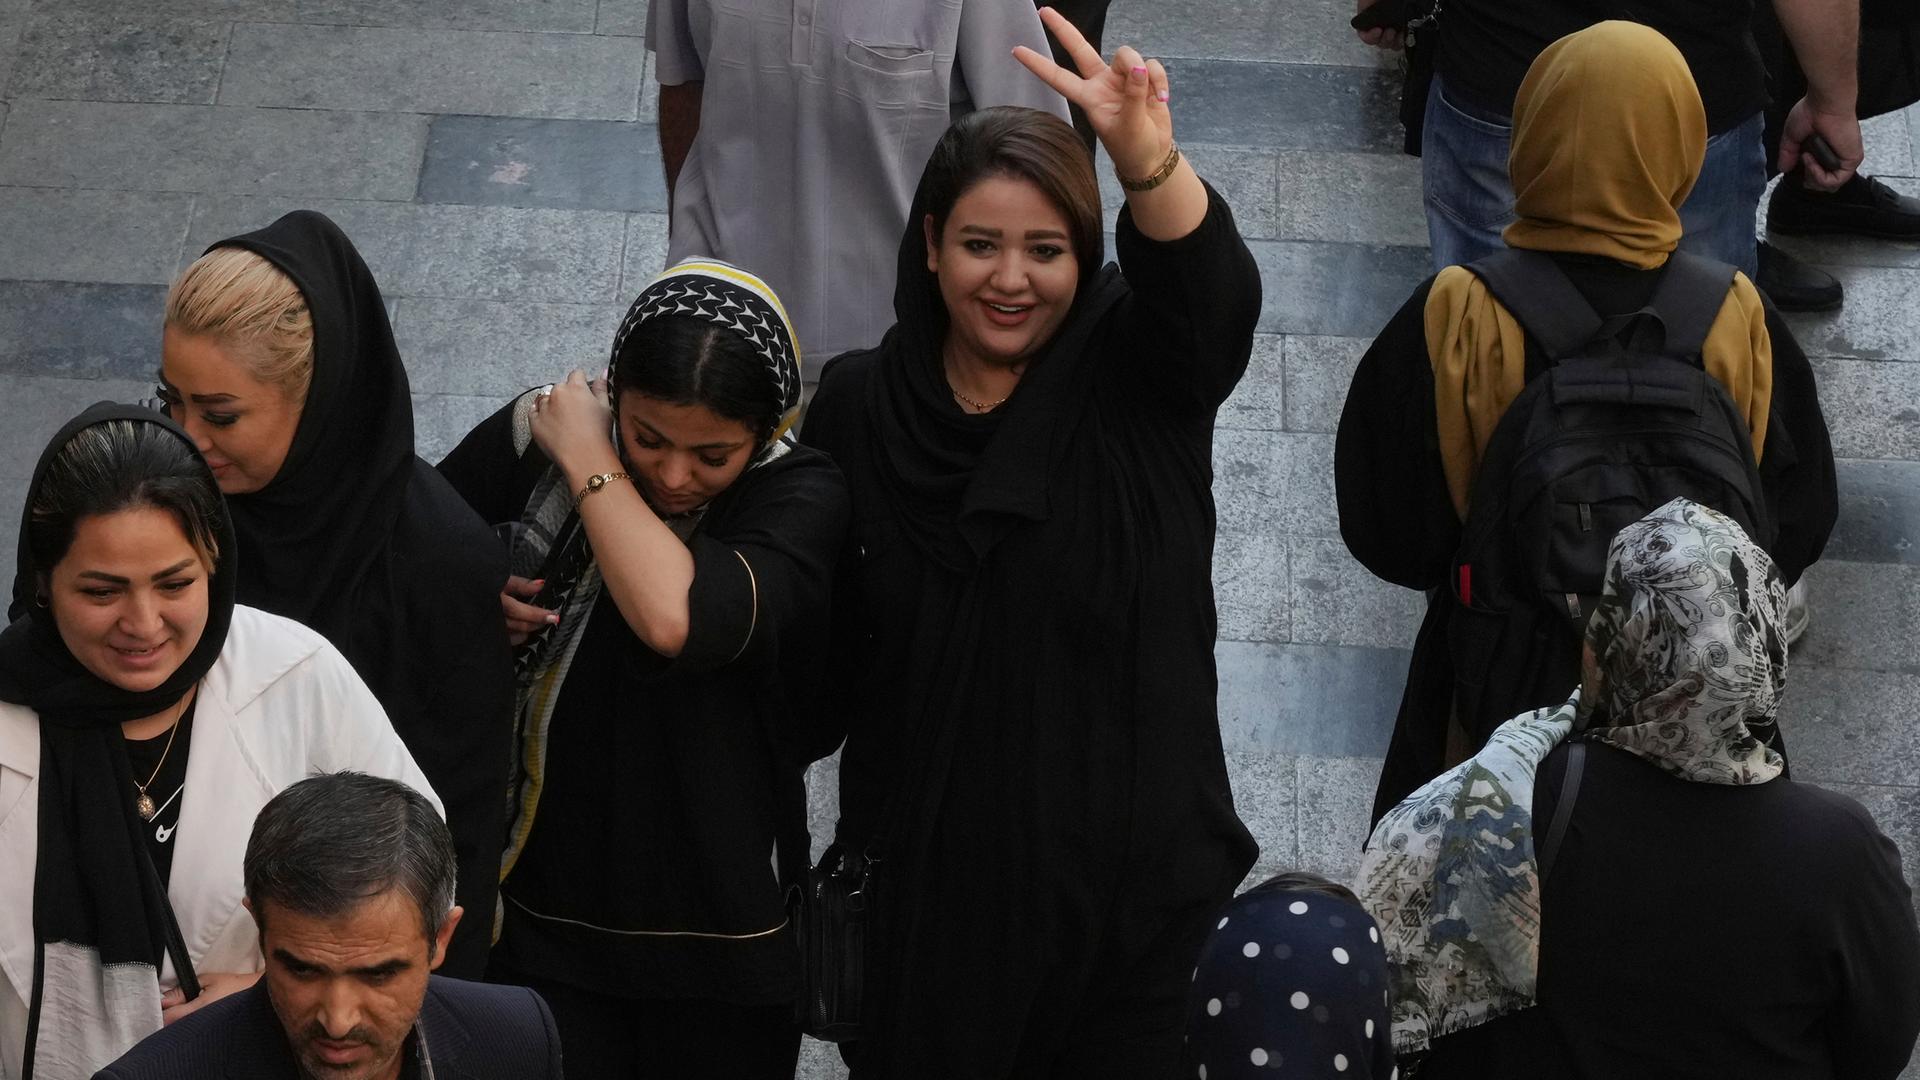 Eine breit lächelnde Frau in Teheran macht das Victory-Zeichen, sie trägt die Haare offen. Einige Frauen neben ihr tragen ein Kopftuch.